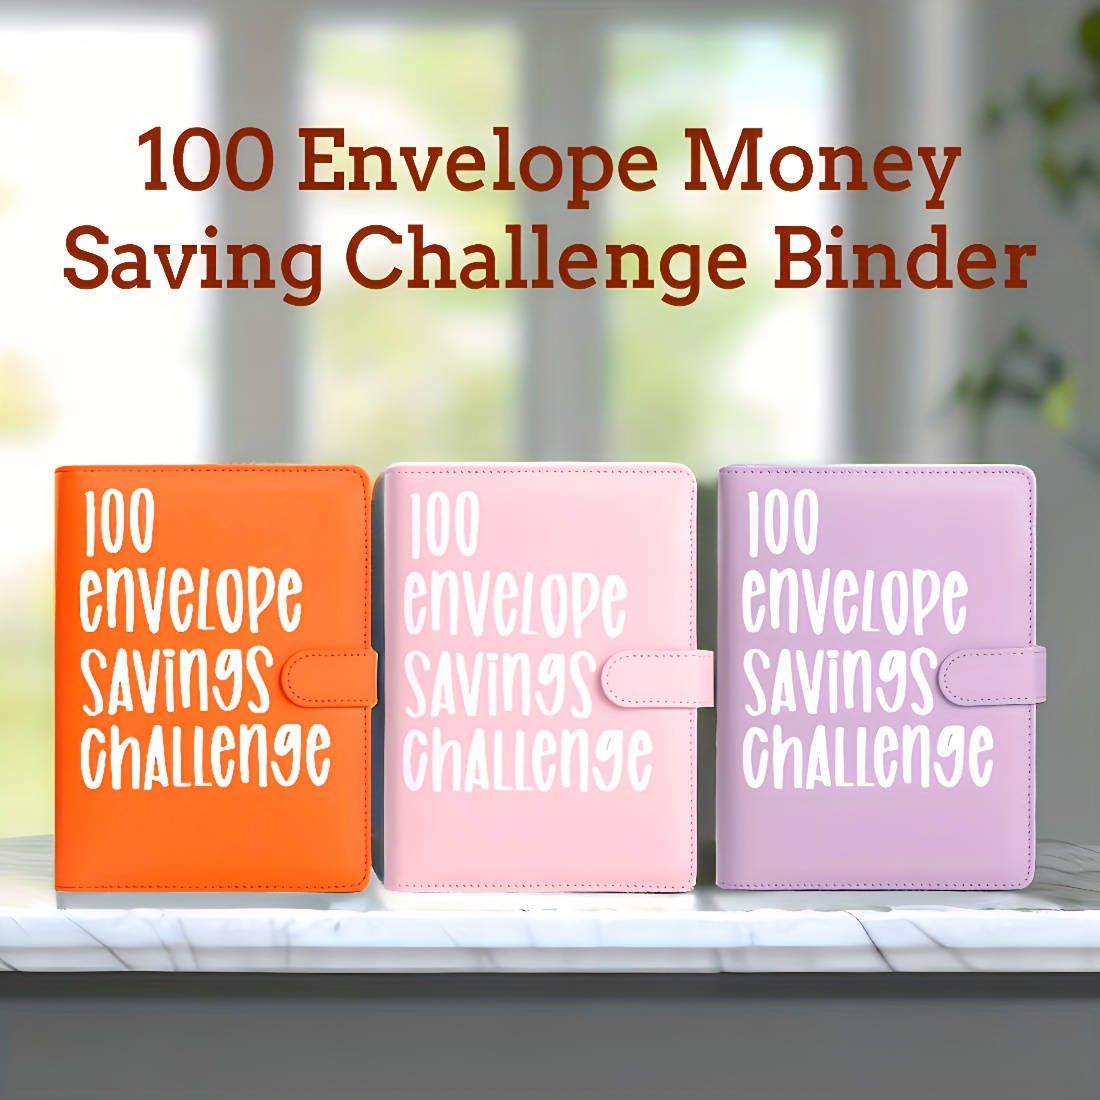 100 Enveloppe Challenge100-day Économiser de l'argent Enveloppe